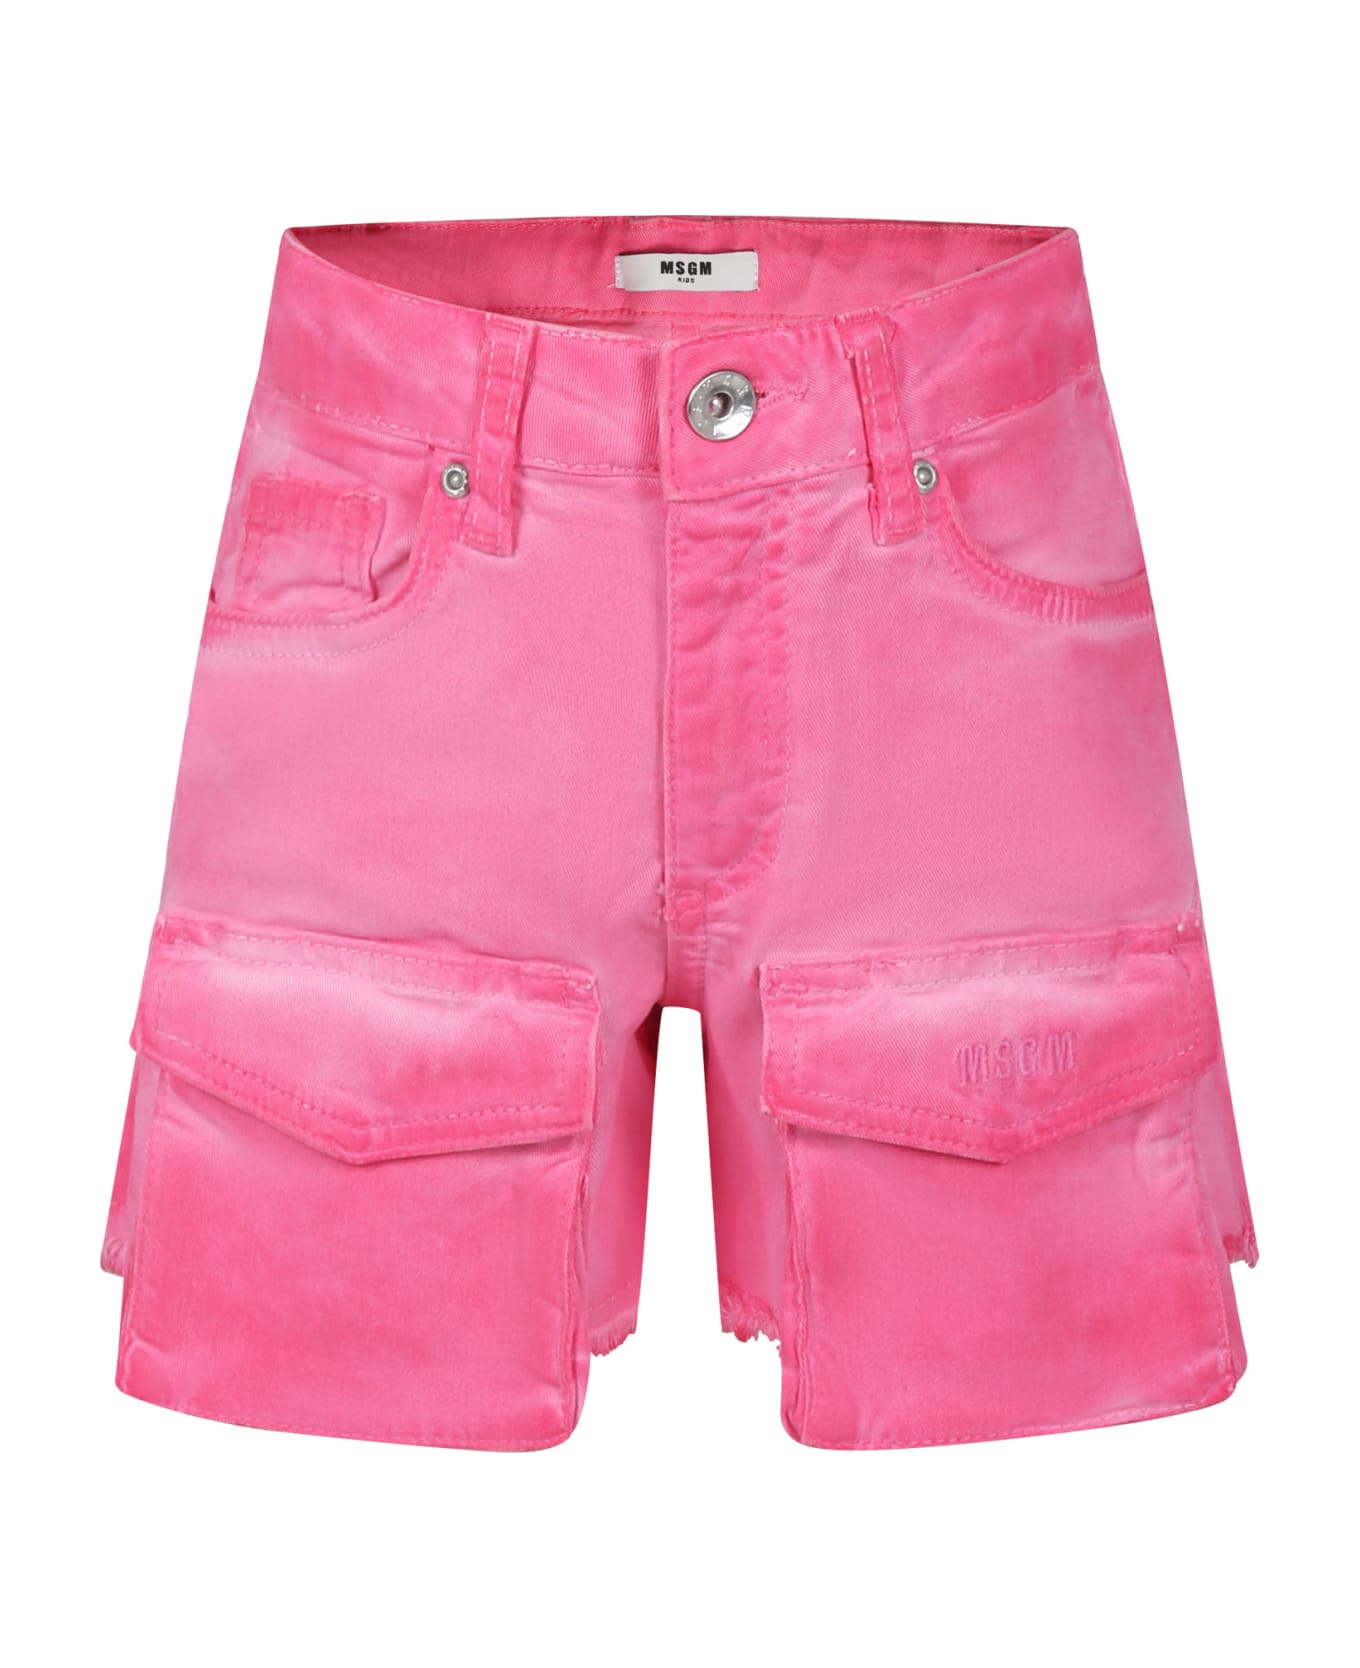 MSGM Fuchsia Denim Shorts For Girl - Fuchsia